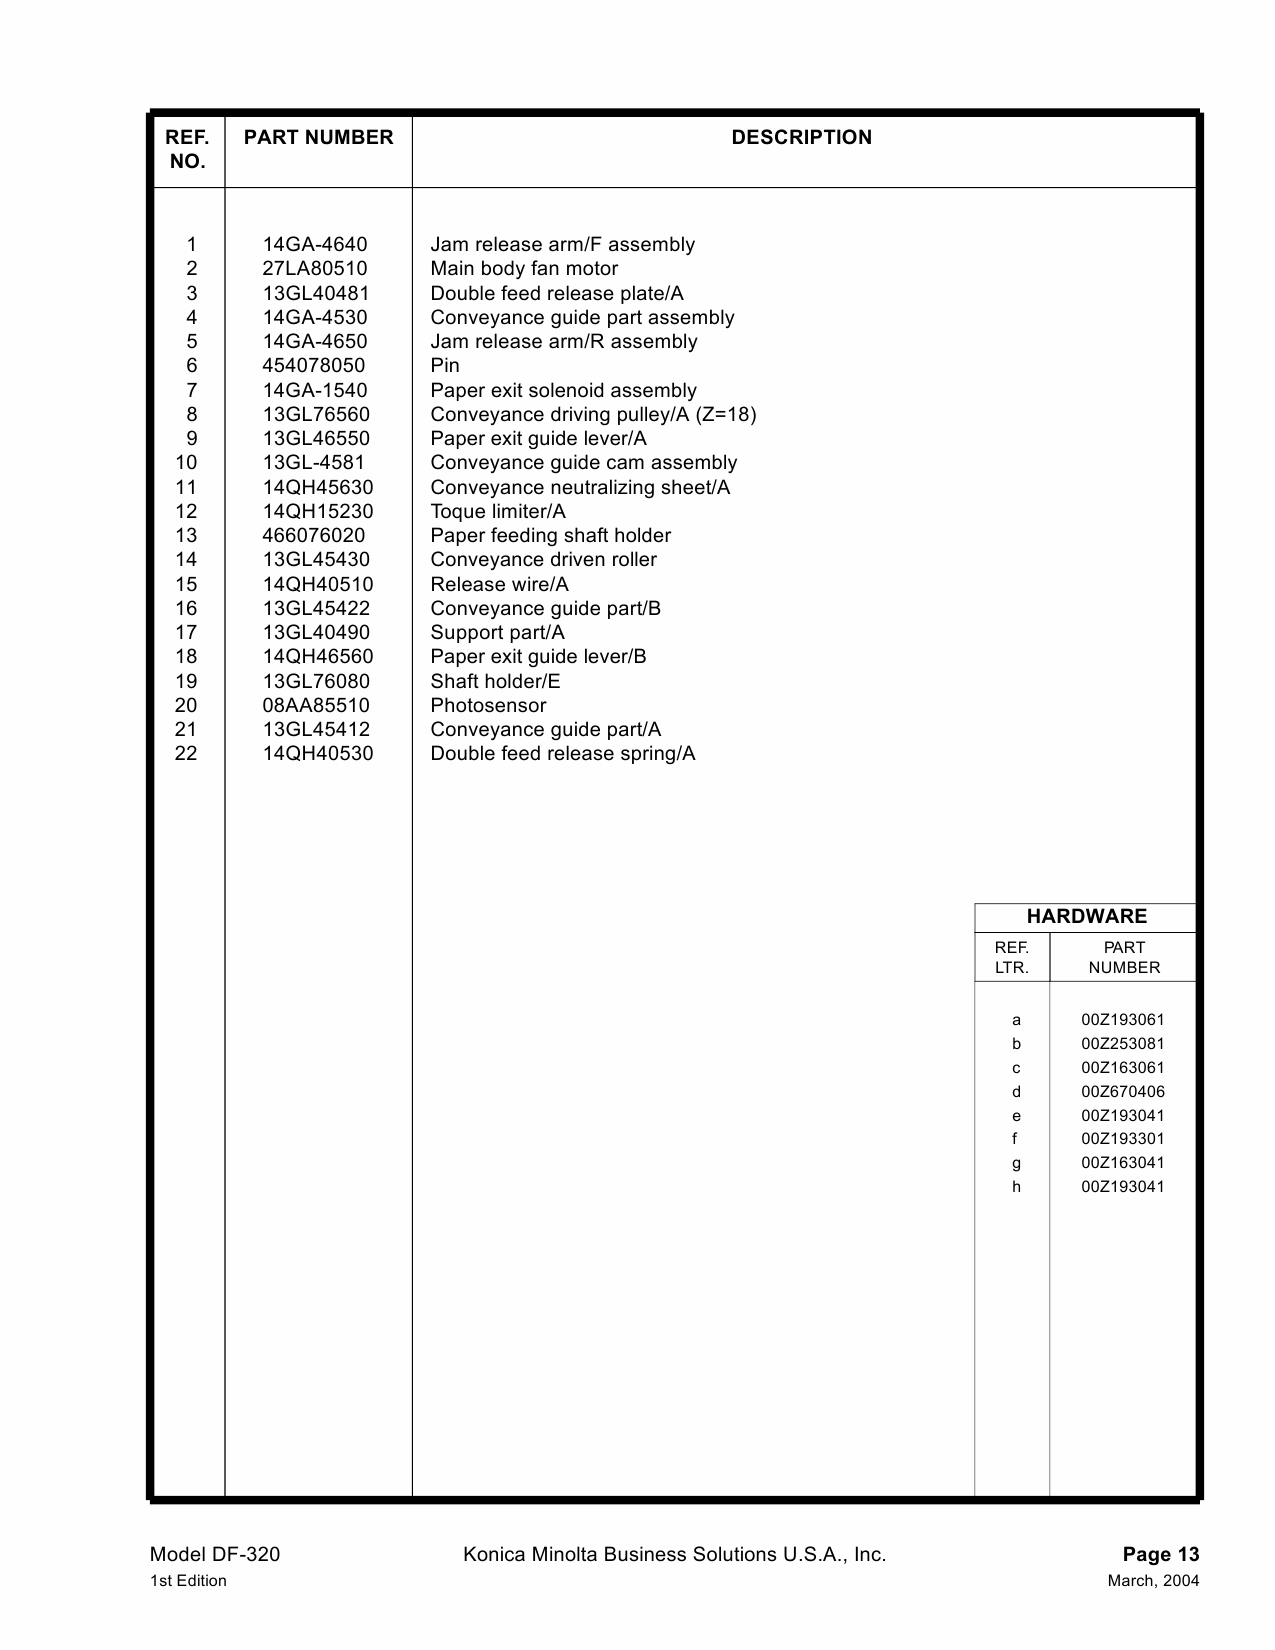 Konica-Minolta Options DF-320 Parts Manual-4